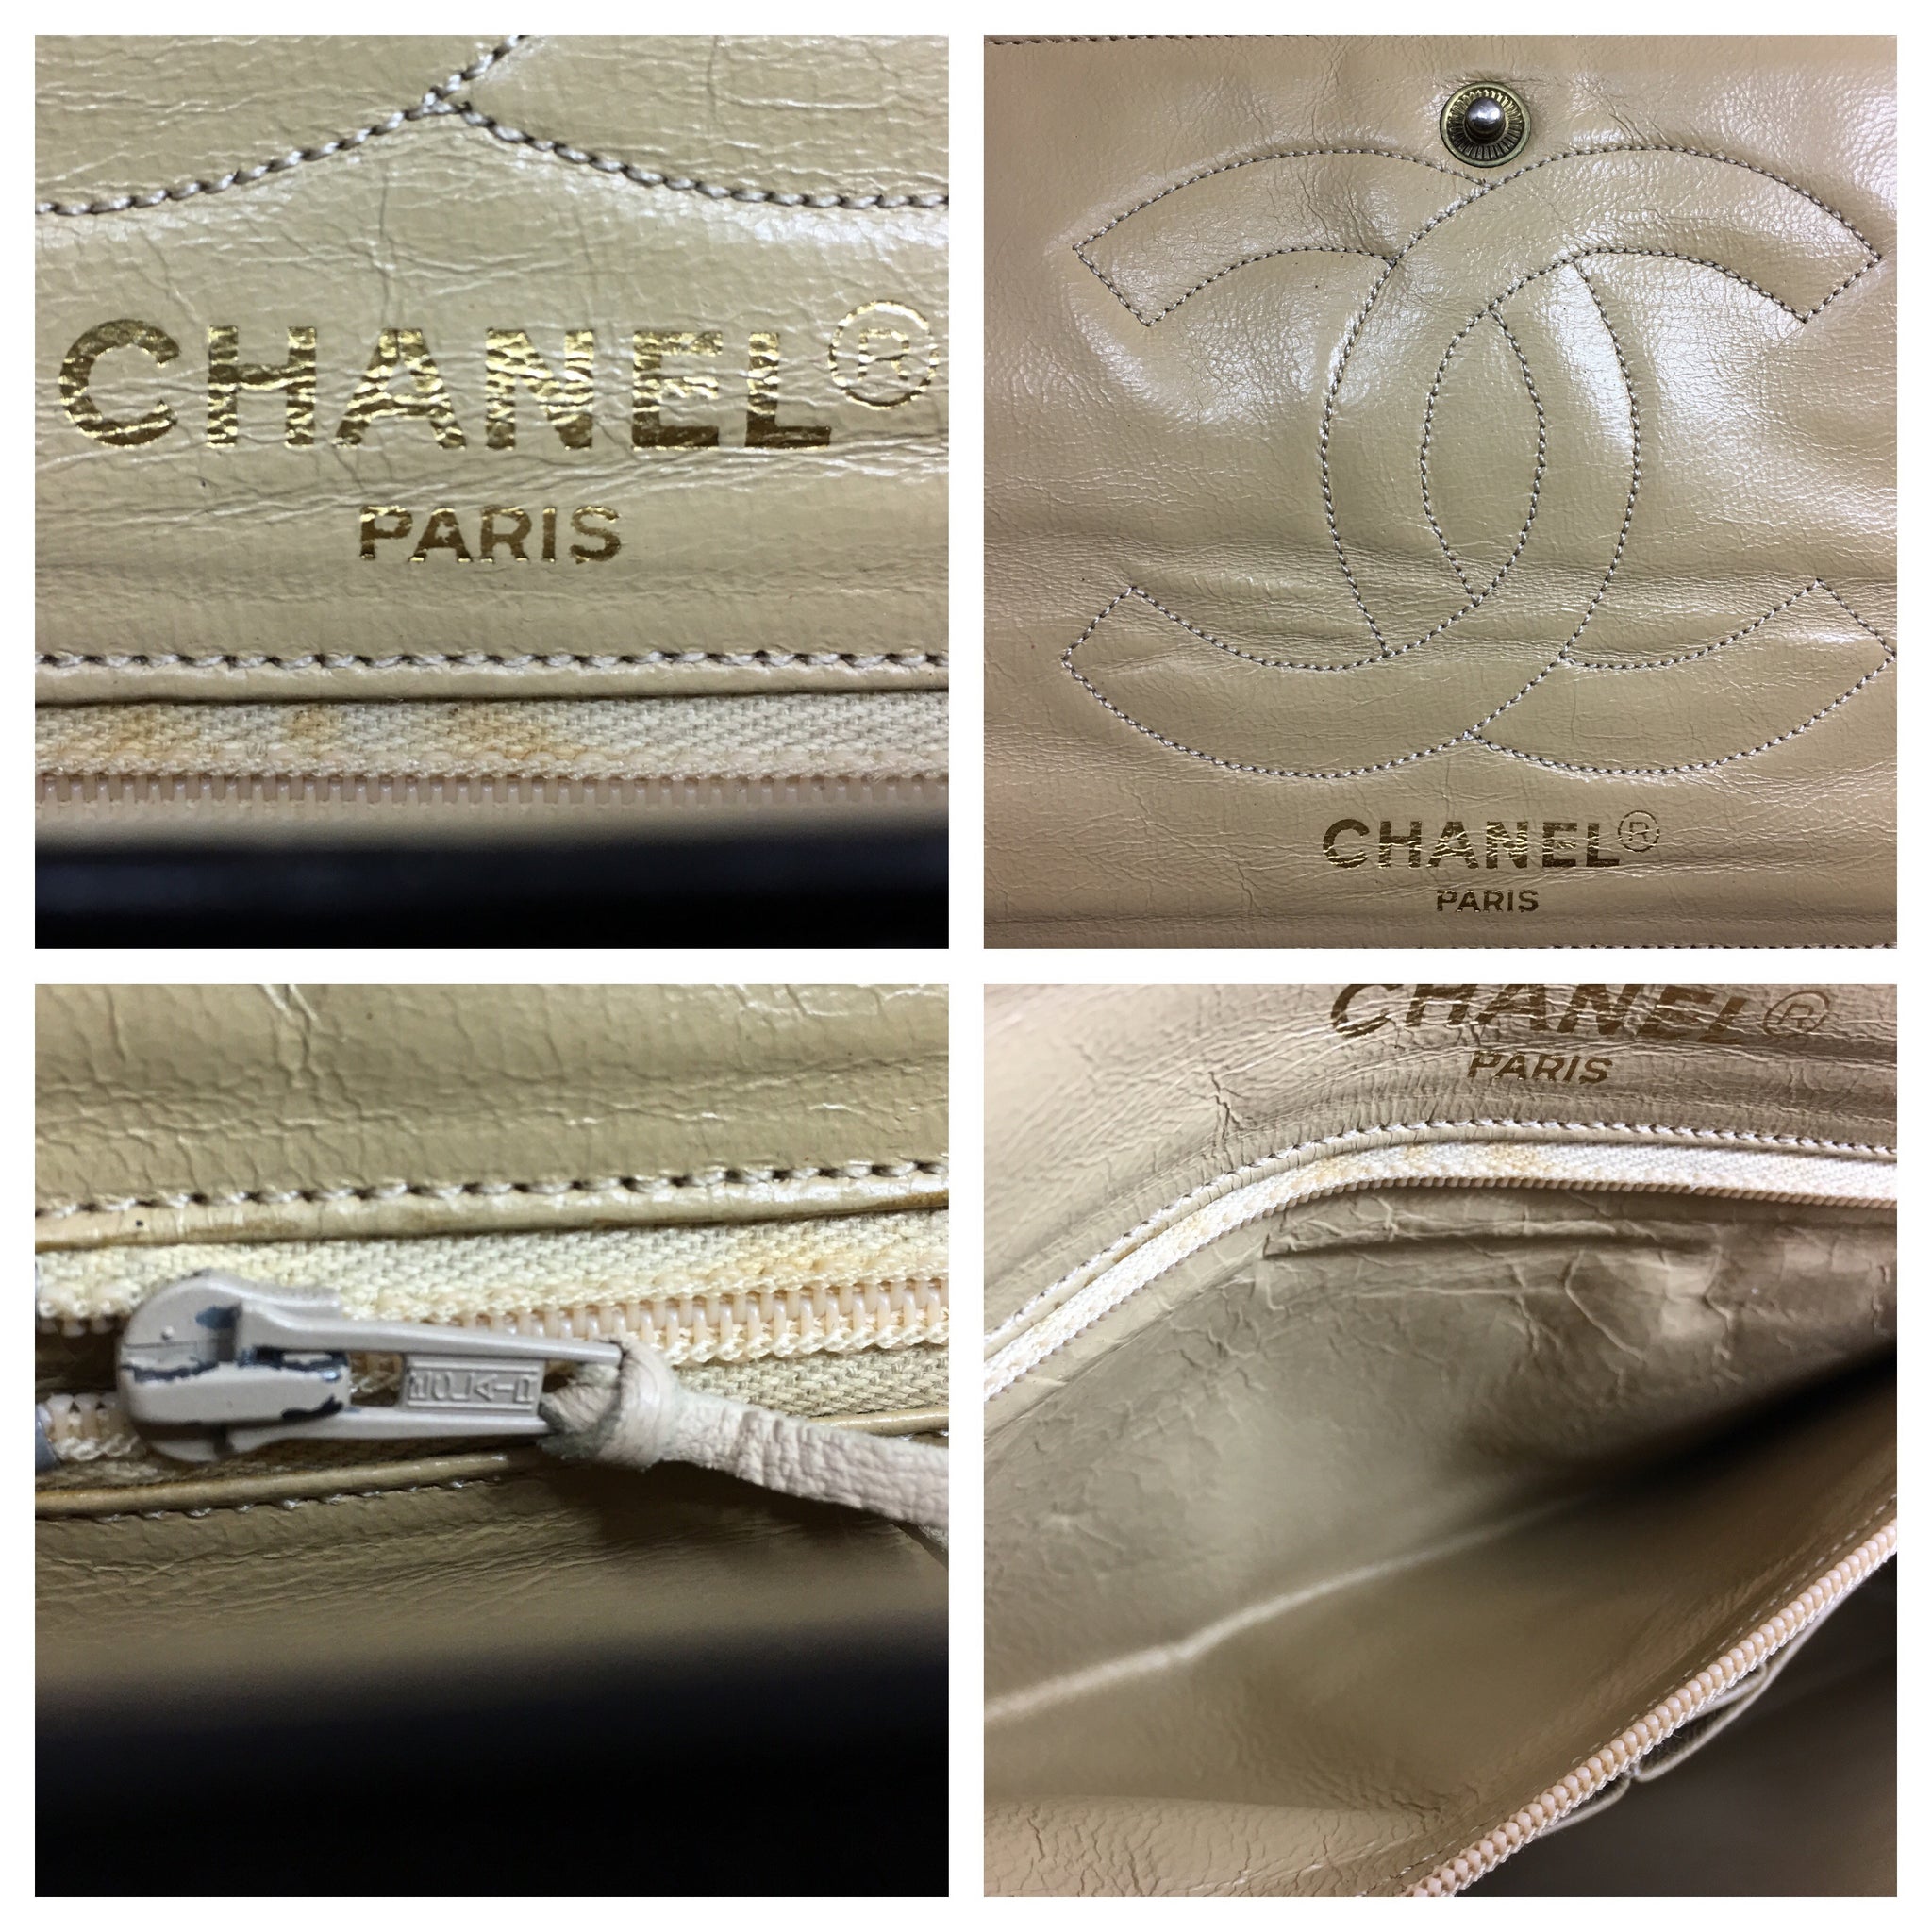 CHANEL Paris Limited Edition 2.55 Double Flap Vintage Bag